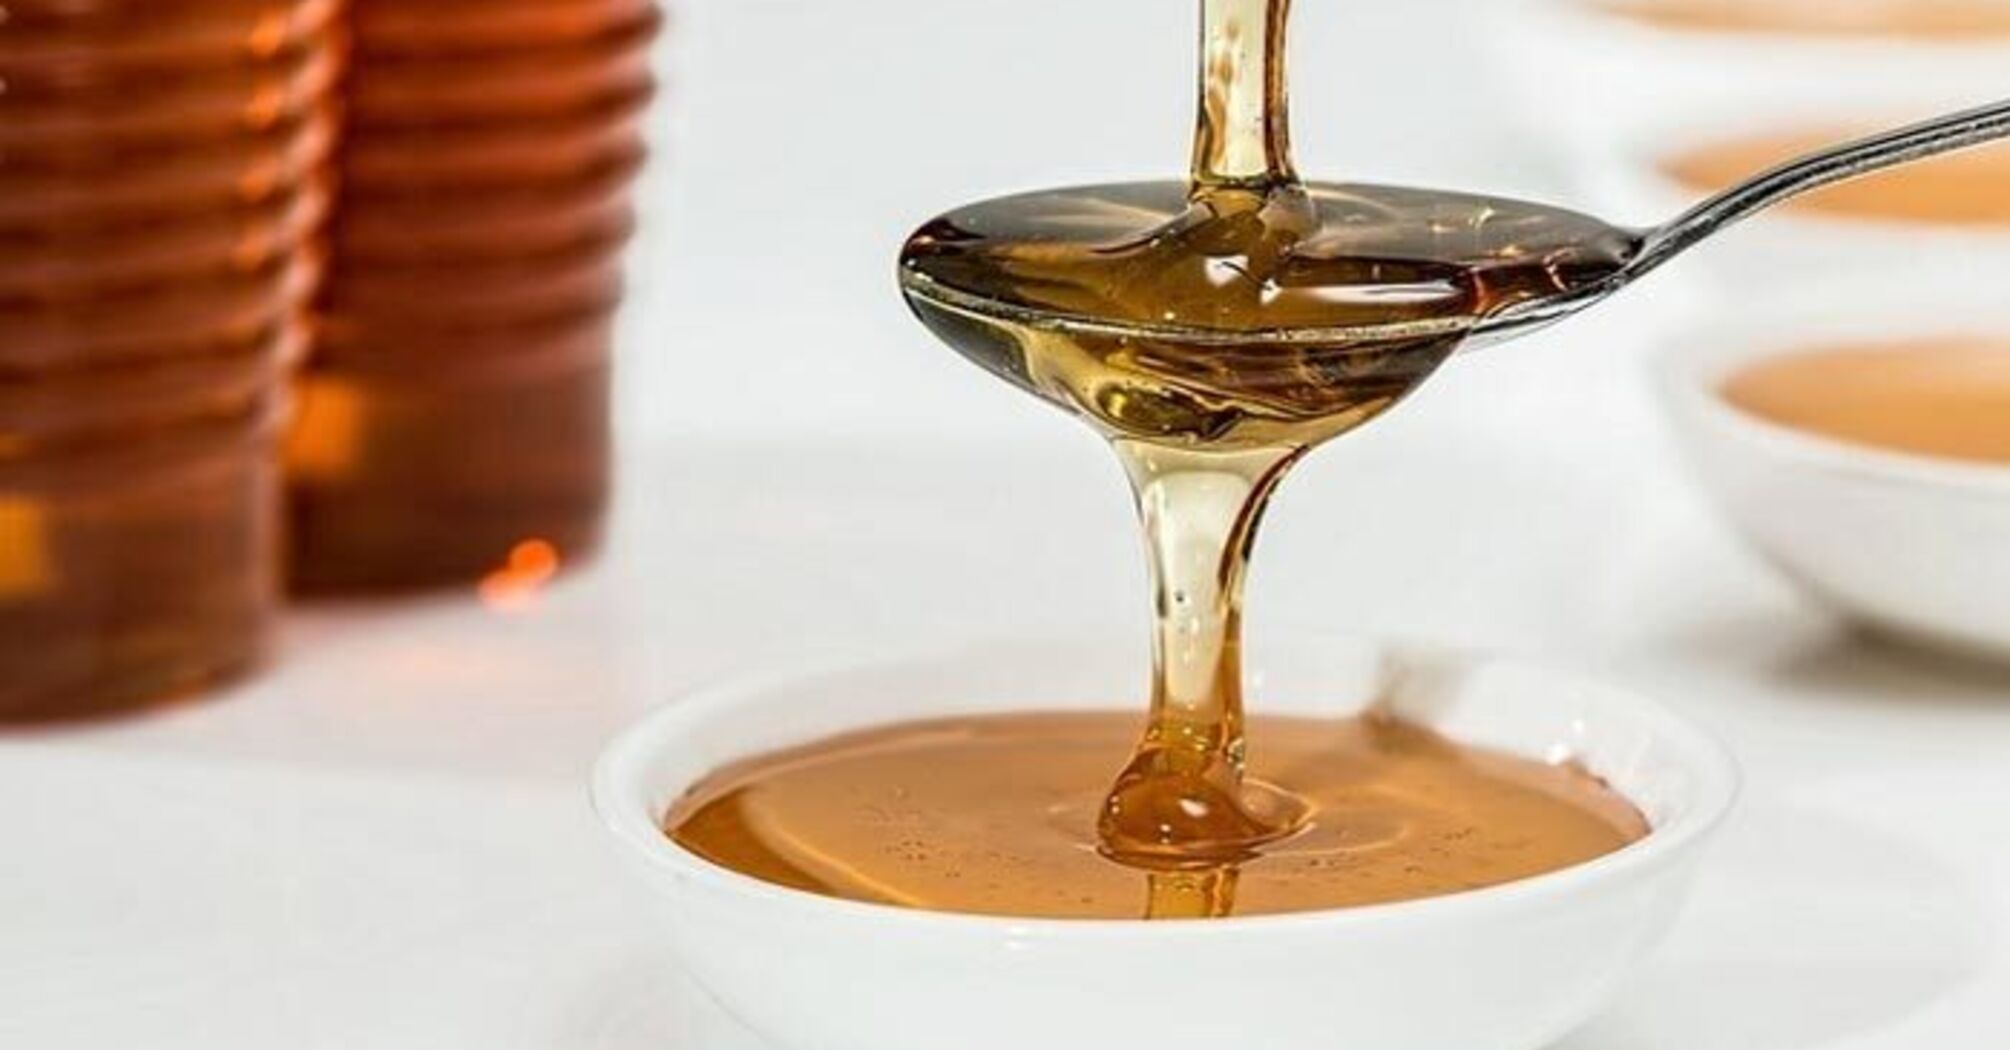 How to check honey for naturalness